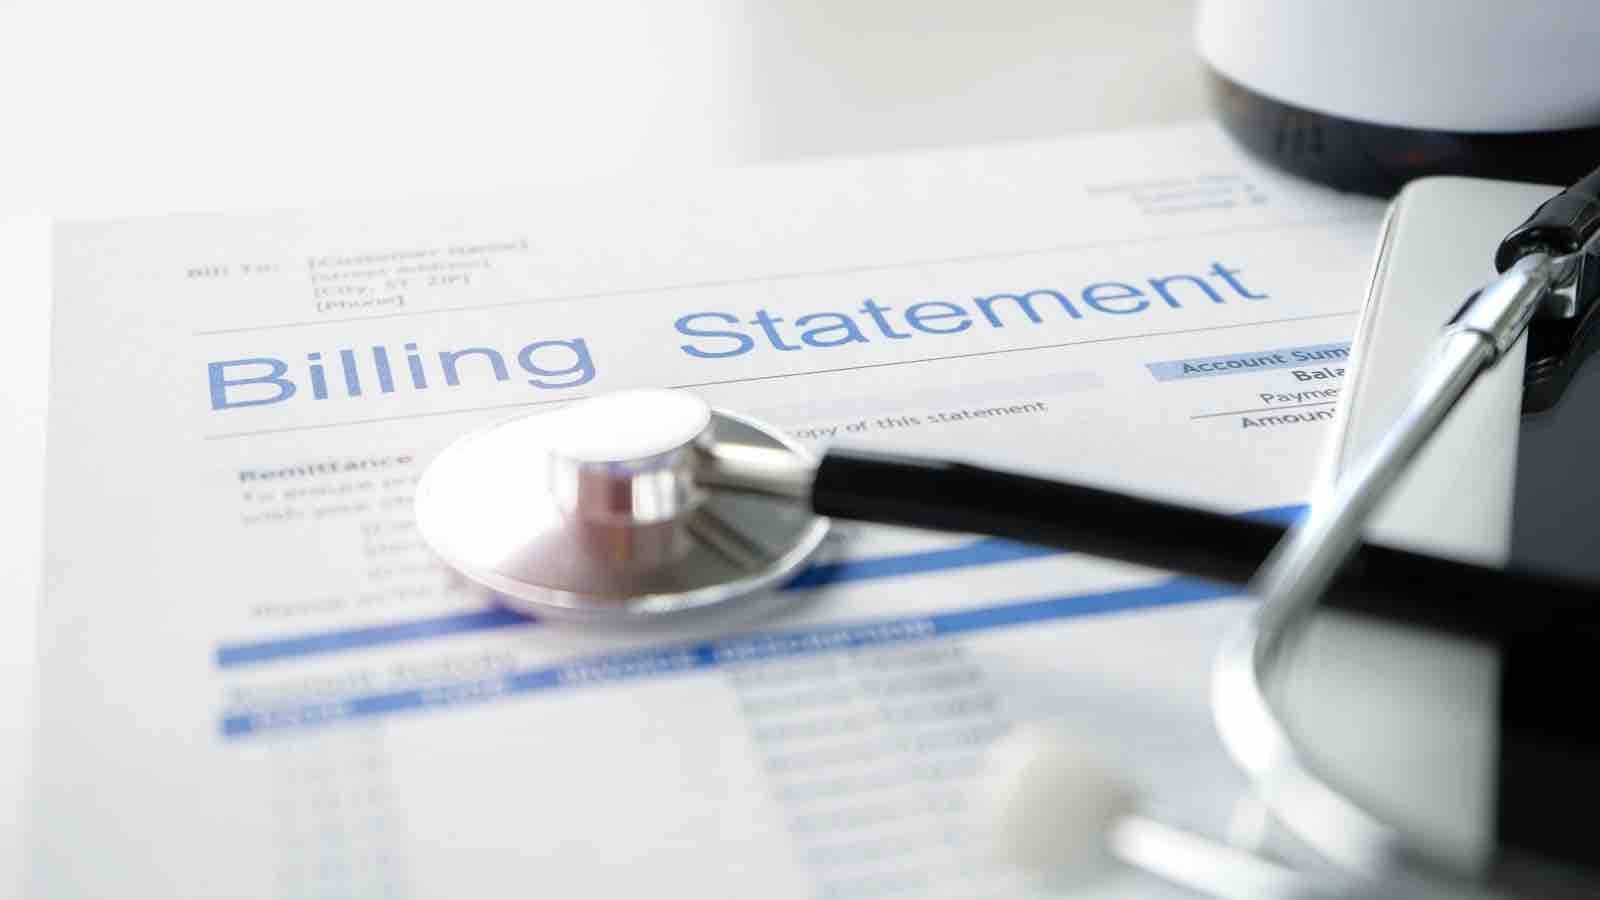 Health billing statement